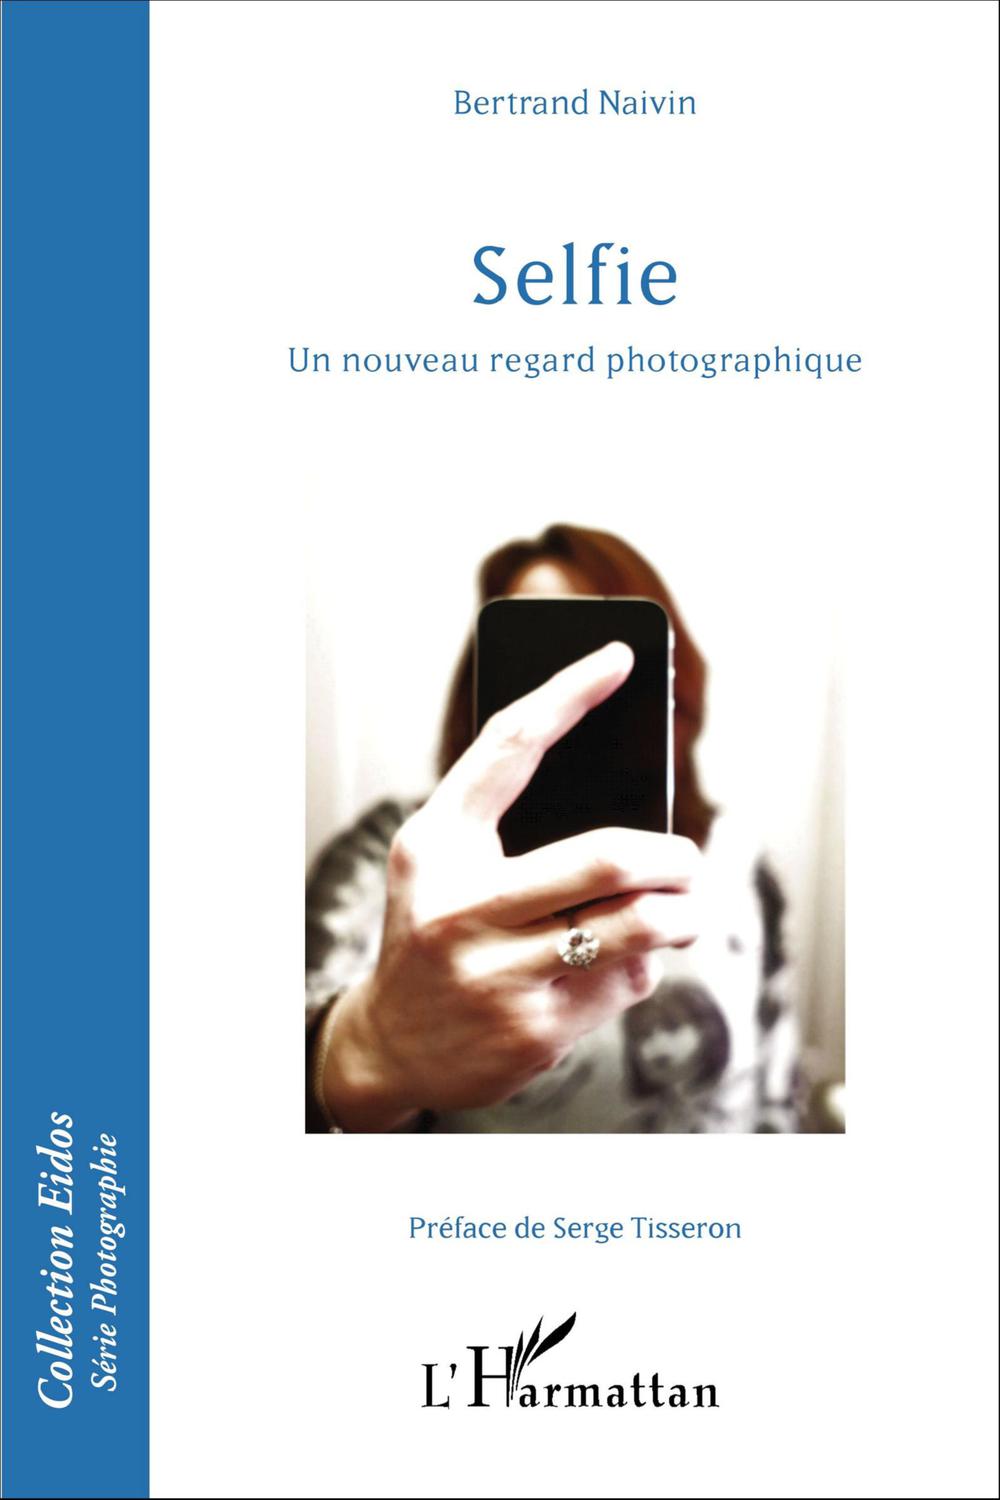 Selfie - Bertrand Naivin